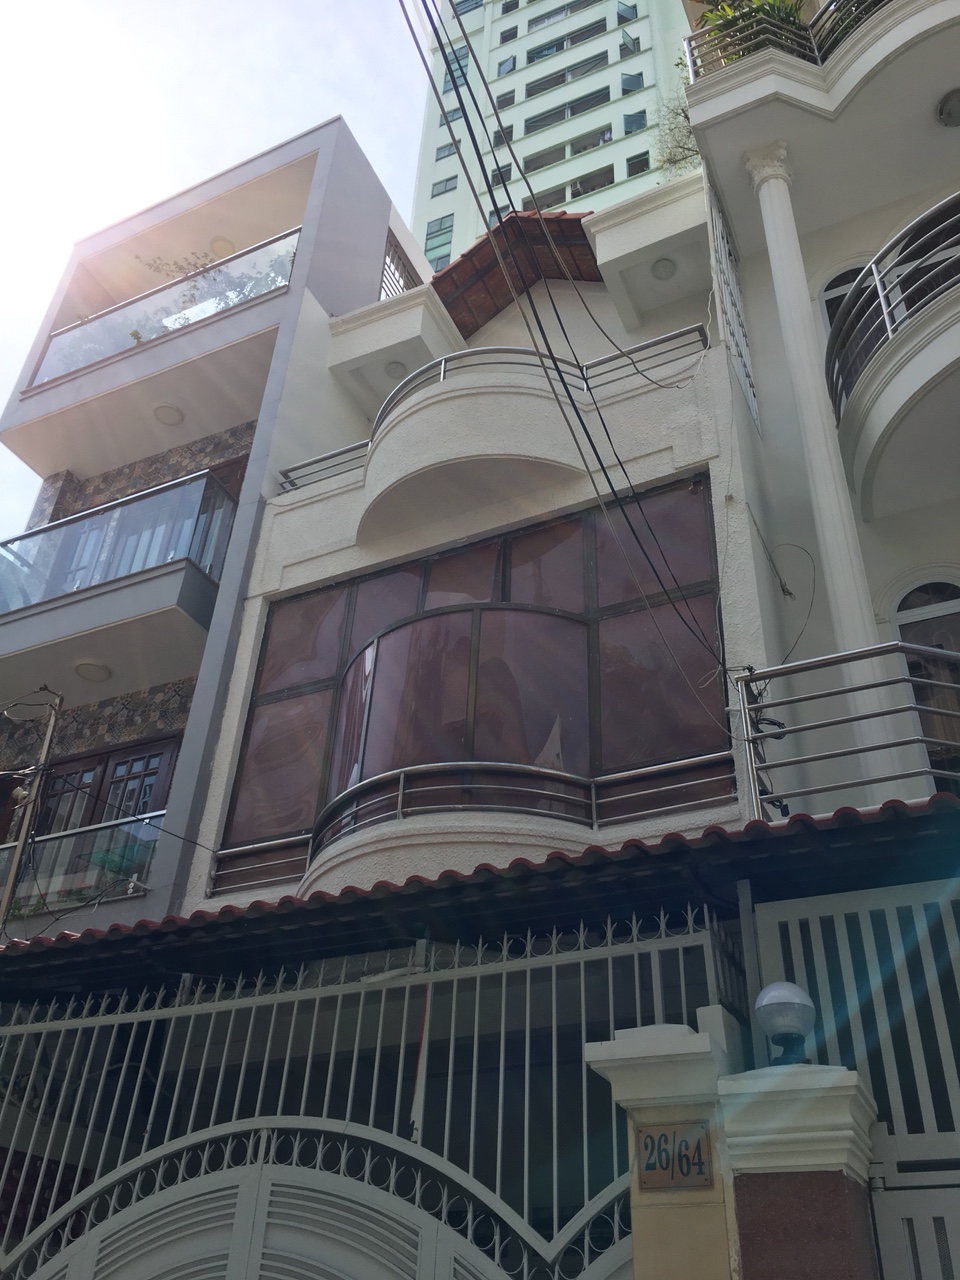 Hot! Bán nhà mặt tiền đường Trần Đình Xu gần Trần Hưng Đạo quận 1, 5 lầu giá bán gấp 30 tỷ